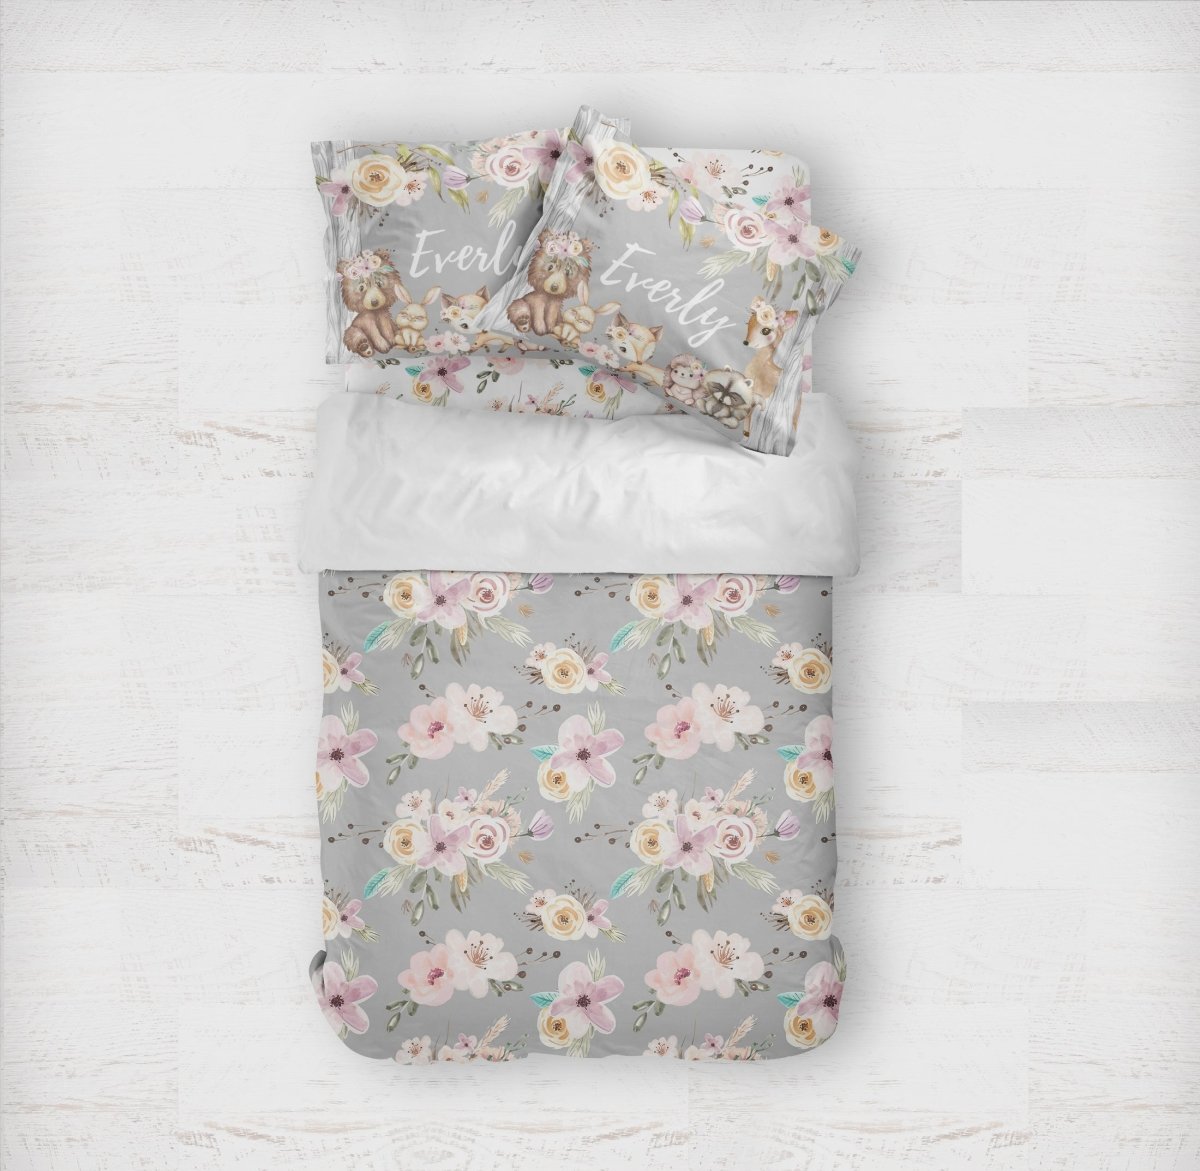 Floral Woodlands Gray Kids Bedding Set (Comforter or Duvet Cover) - Floral Woodlands, gender_girl, text